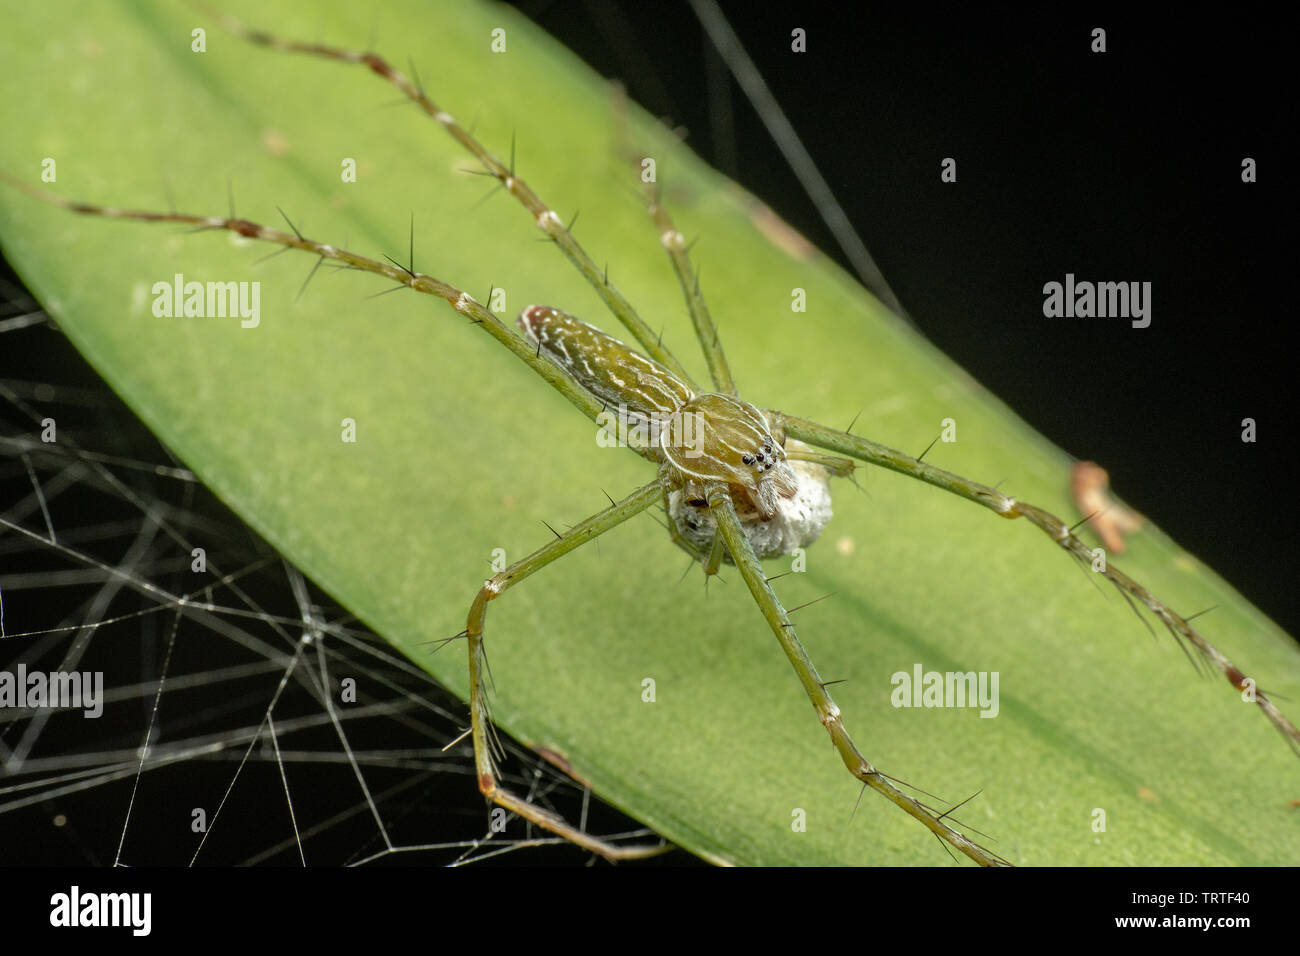 Hygropoda Lineata, der nördlichen gesäumt Fischen Spinne, auf einem Blatt mit Ei sack Regenwald in Queensland, Australien Stockfoto